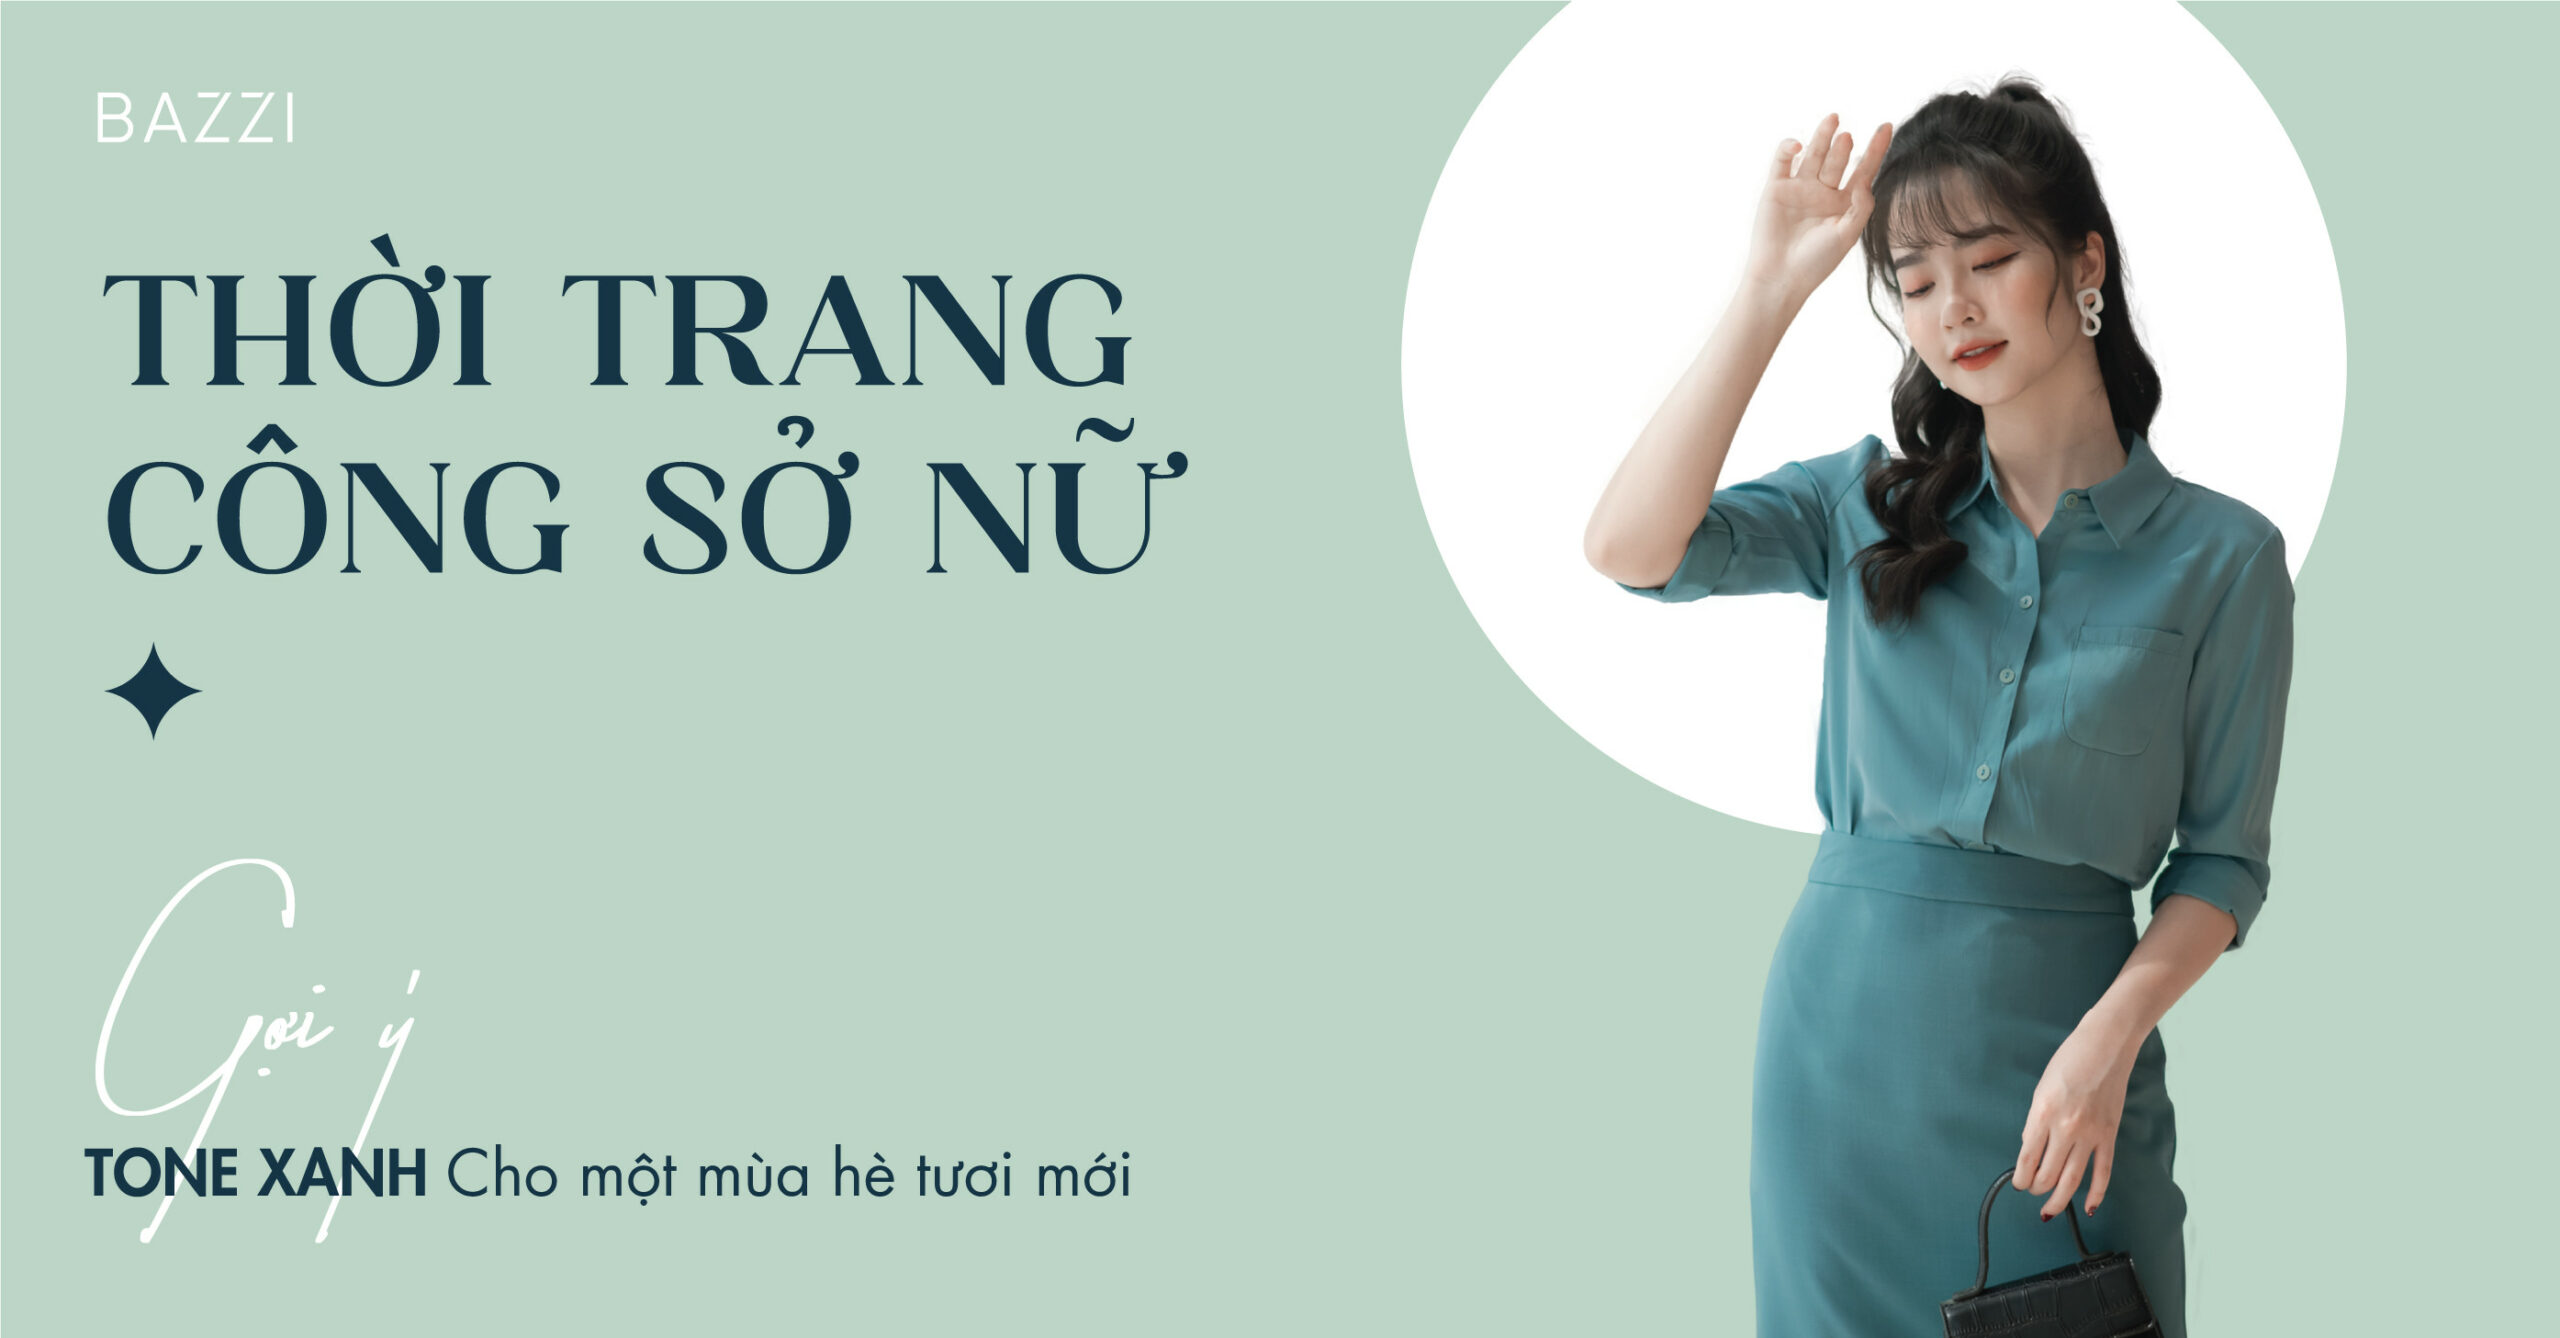 Vest nữ công sở  Nhà may Hồng Ngọc  May đồng phục công sở tphcm